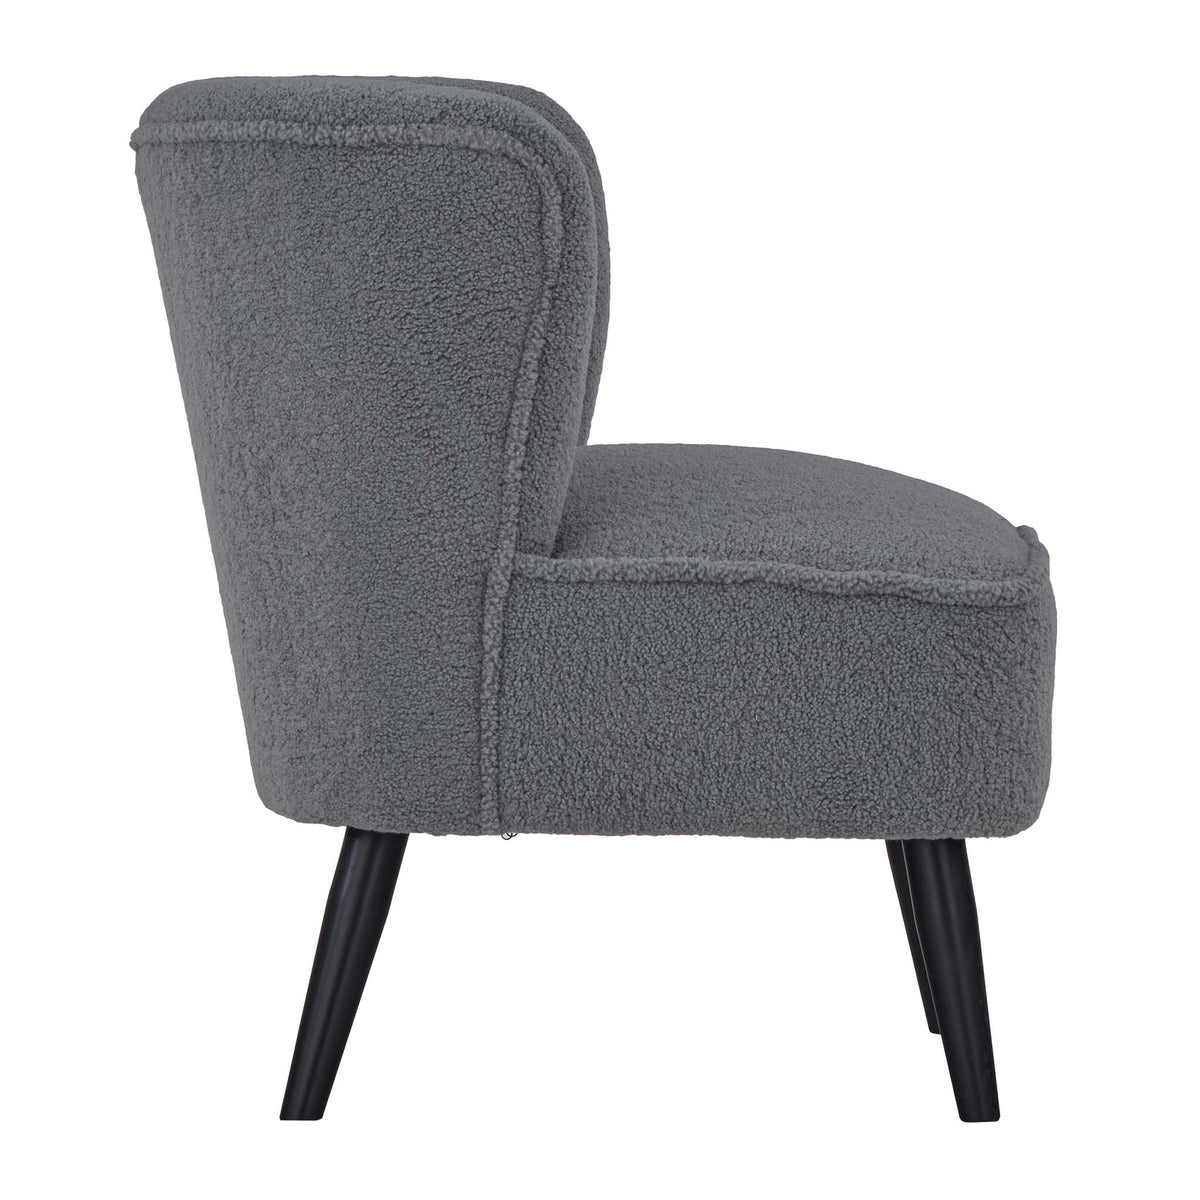 Malmesbury Teddy Accent Chair - Grey